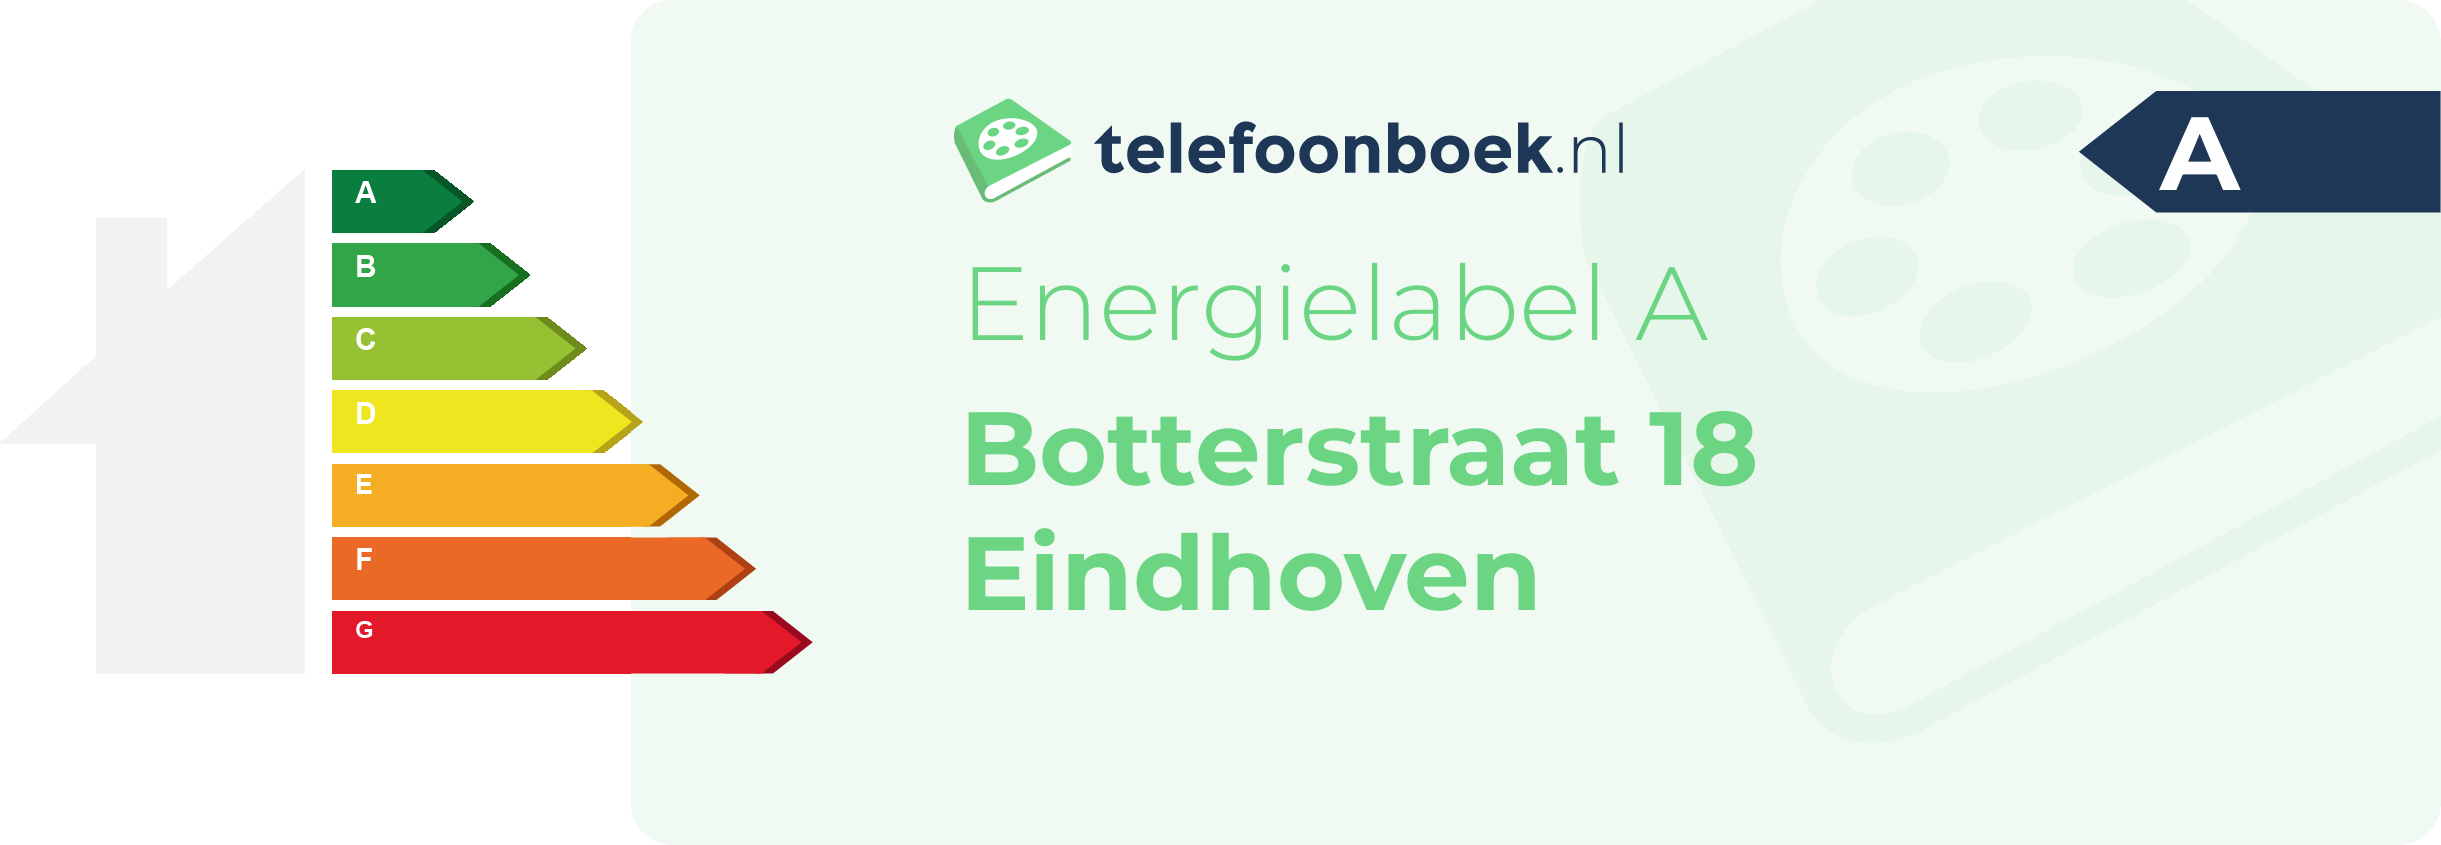 Energielabel Botterstraat 18 Eindhoven